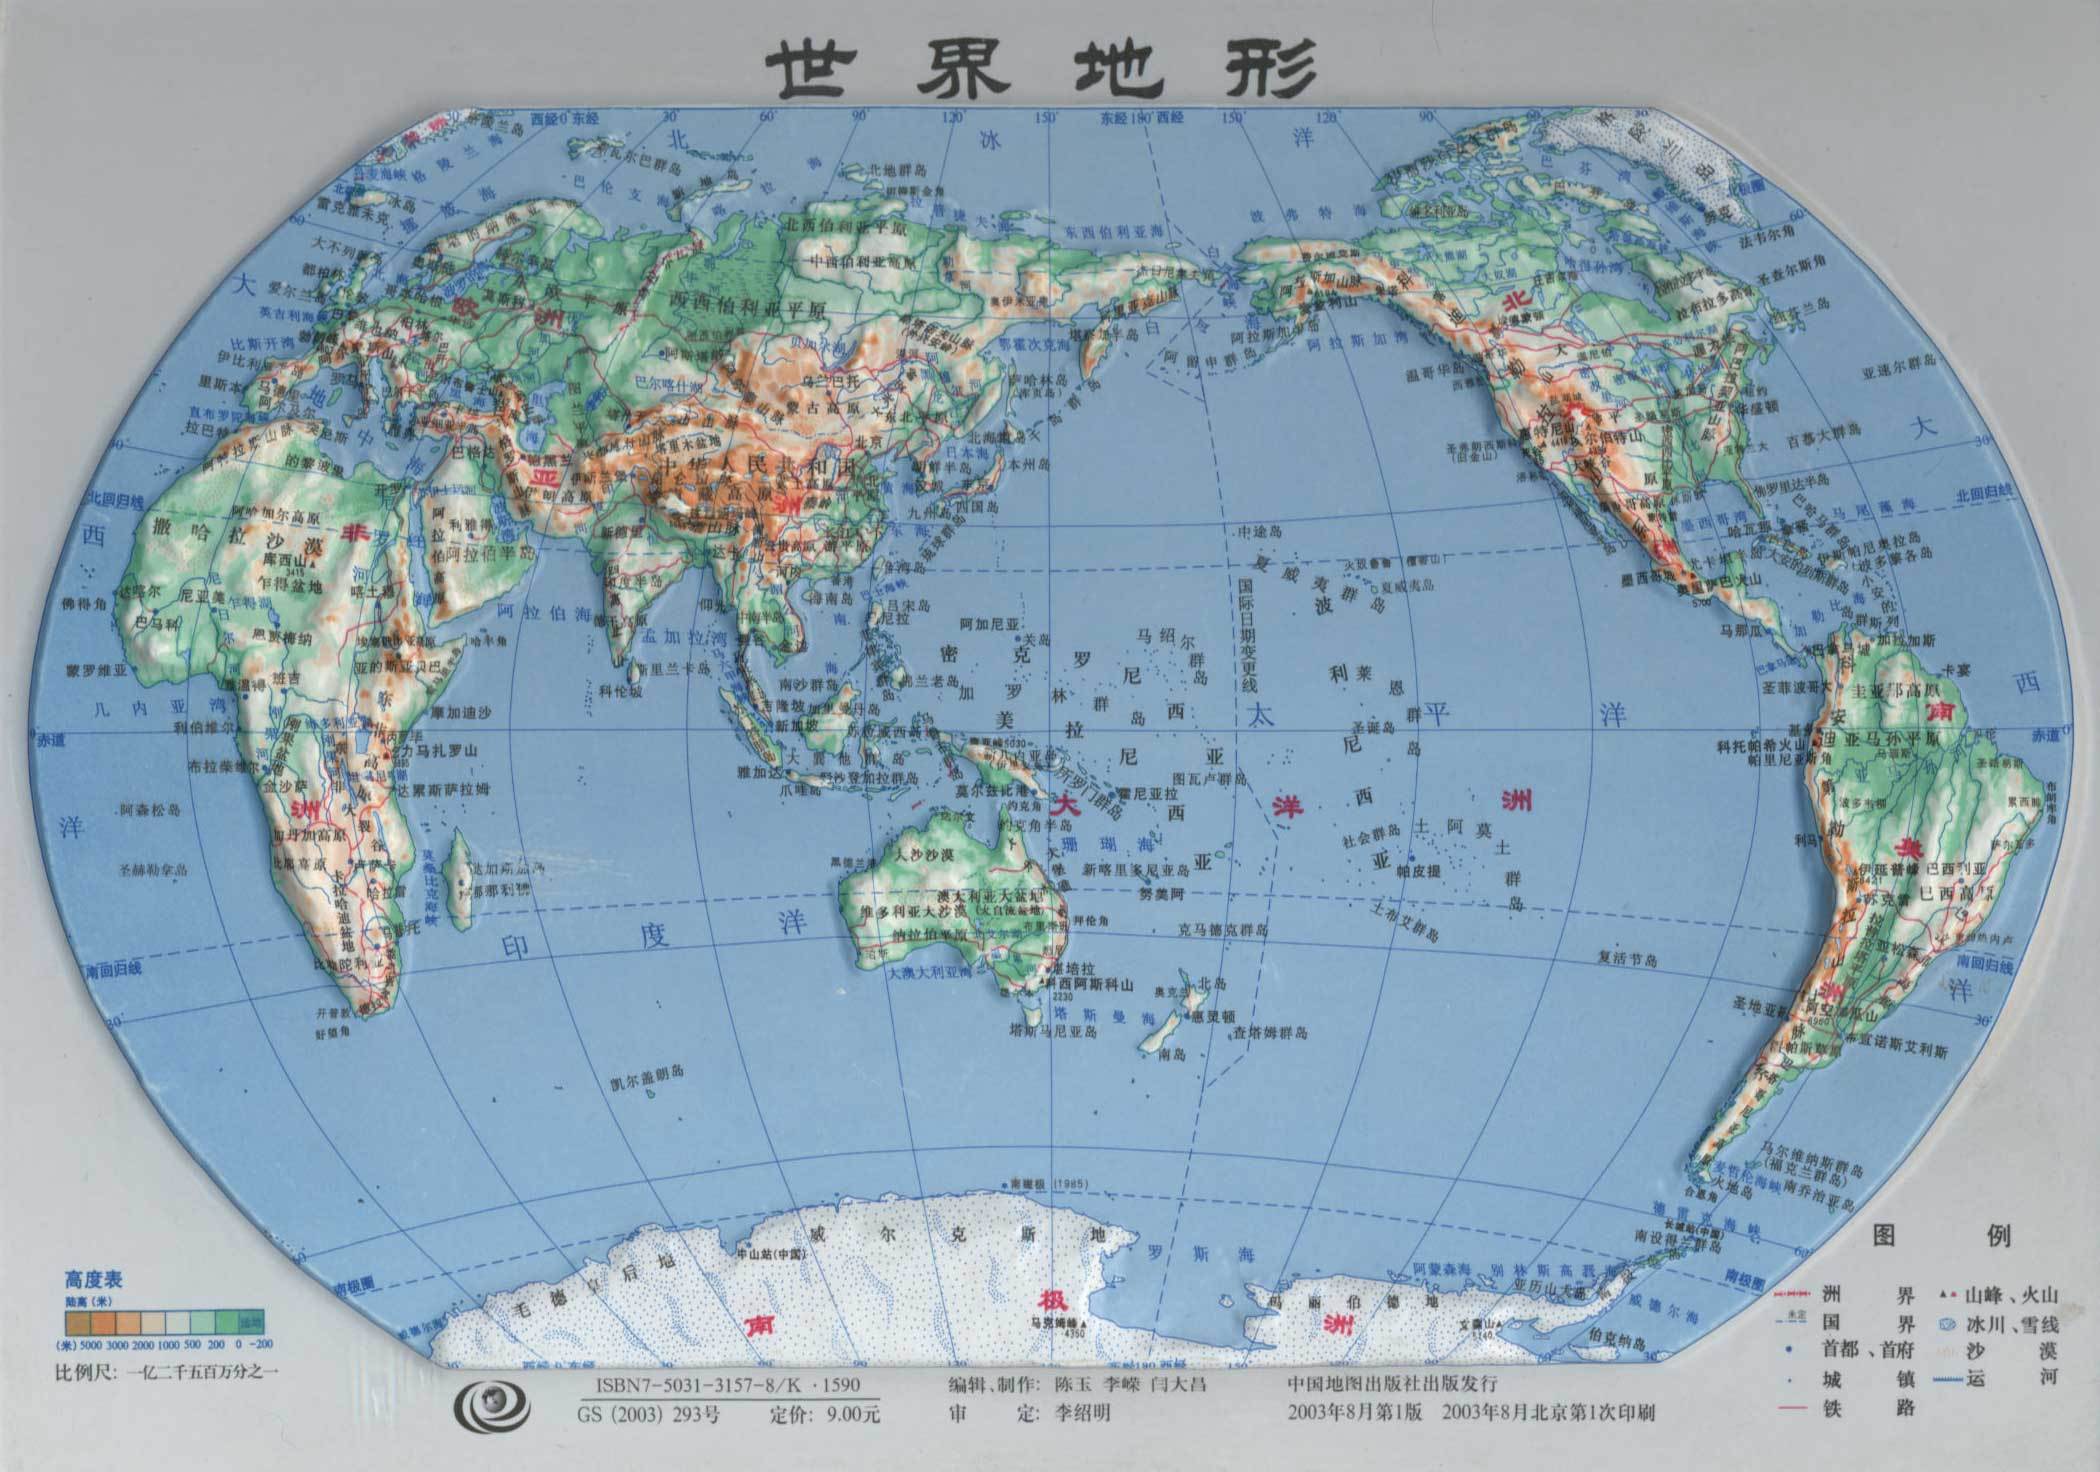 世界地图桌面 世界地图桌面高清壁纸下载 | 犀牛图片网